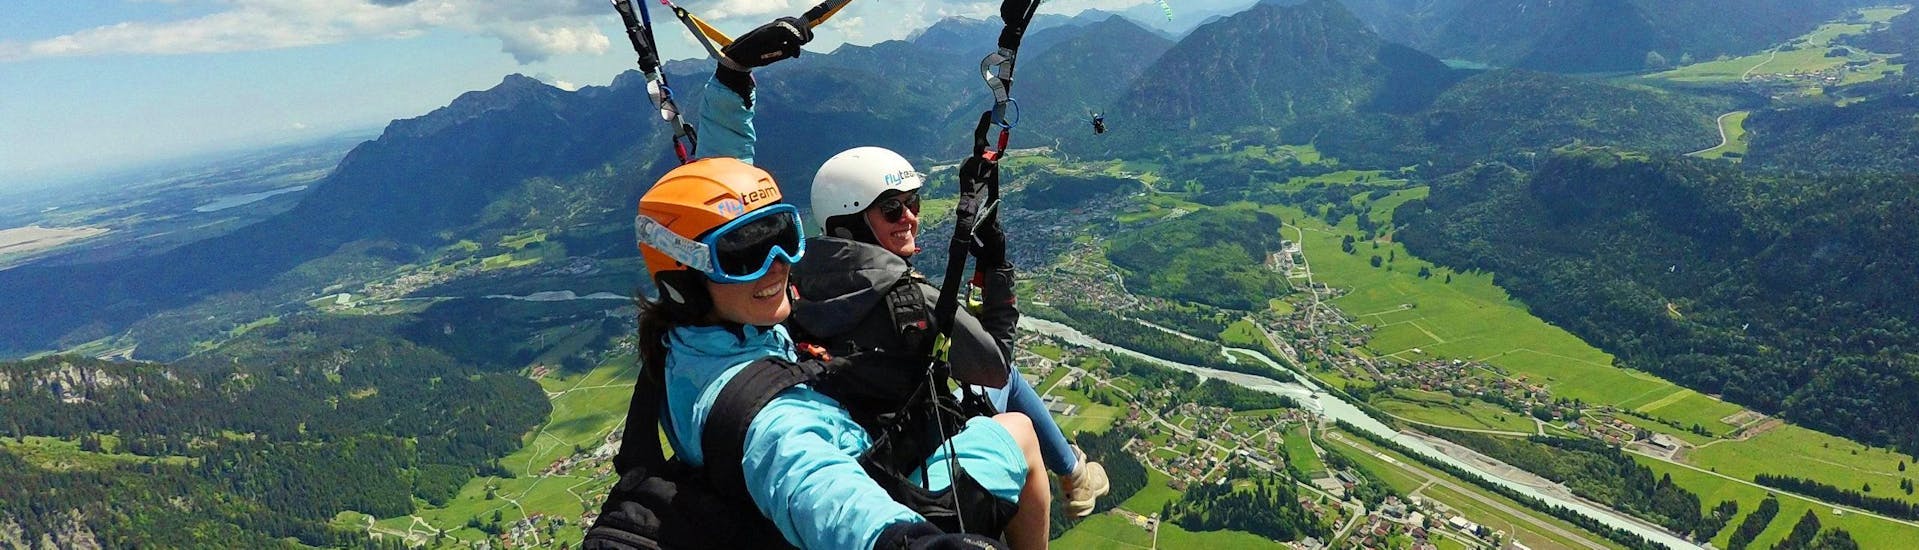 Eine Tandempilotin von FlyTeam und ihre Passagierin schweben beim Tandem-Gleitschirmfliegen "Panorama" vom Hahnenkamm hoch über Reutte in Tirol.